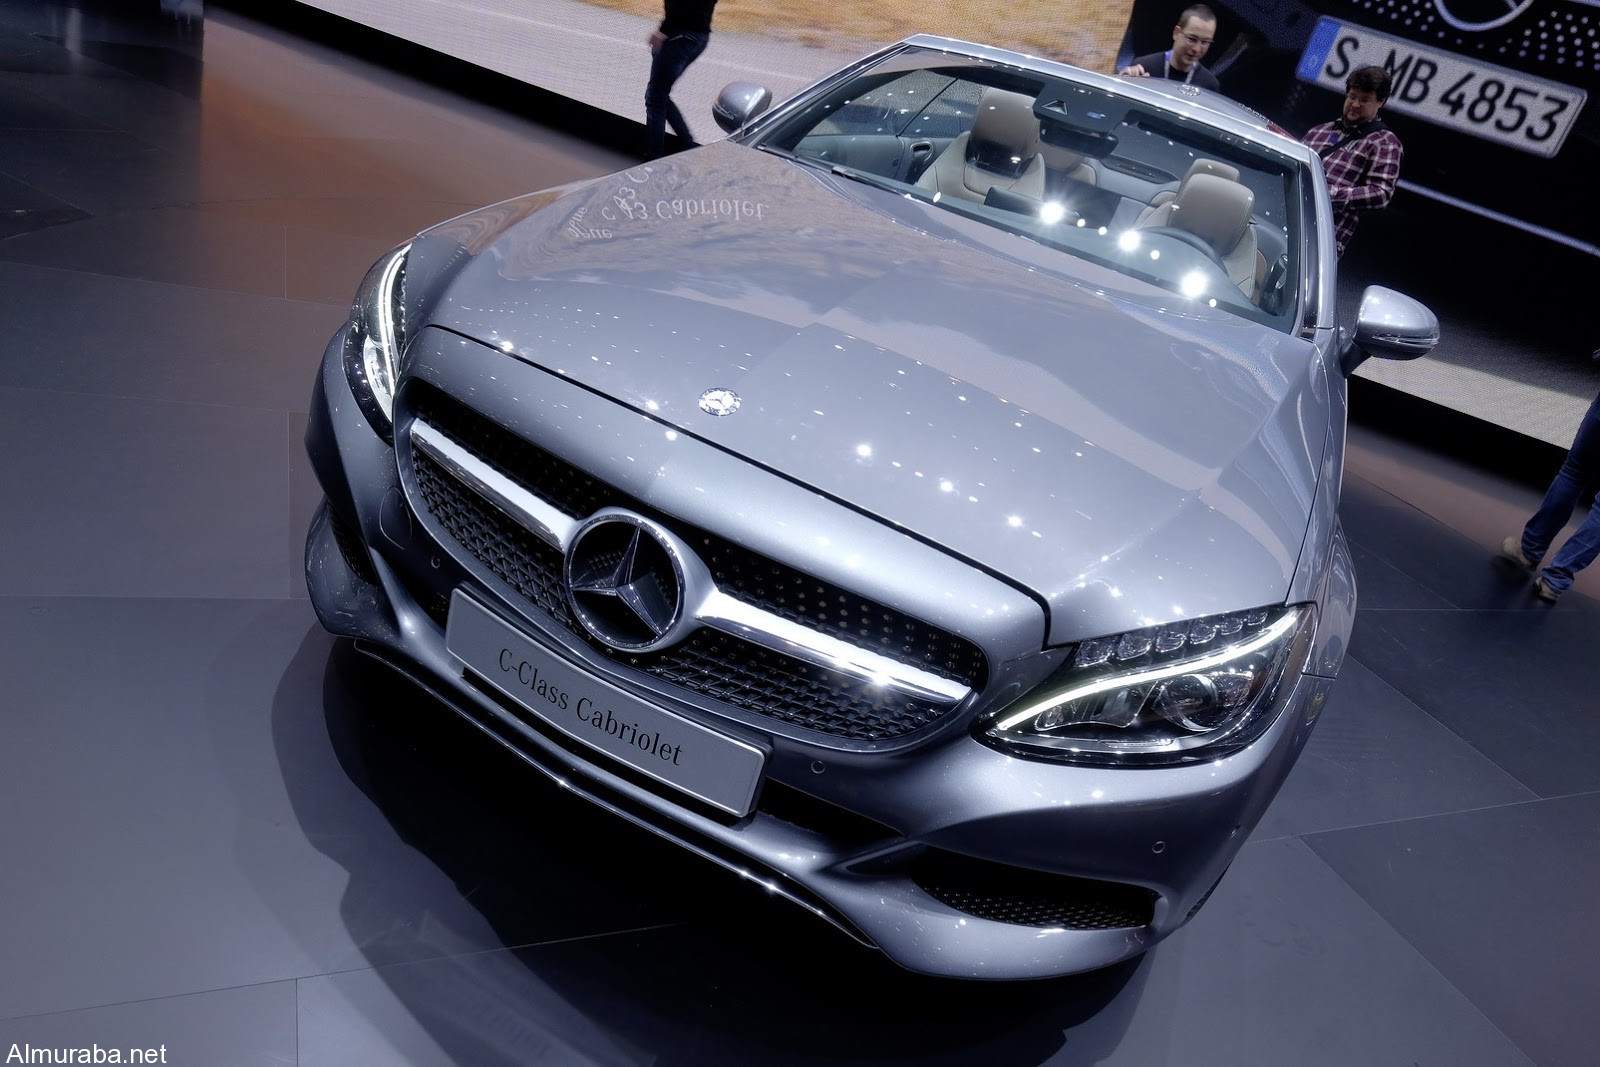 "مرسيدس بنز" تضيف سيارة جديدة لعائلة C-Class وتطلقها بمعرض سيارات جنيف Mercedes 2017 42